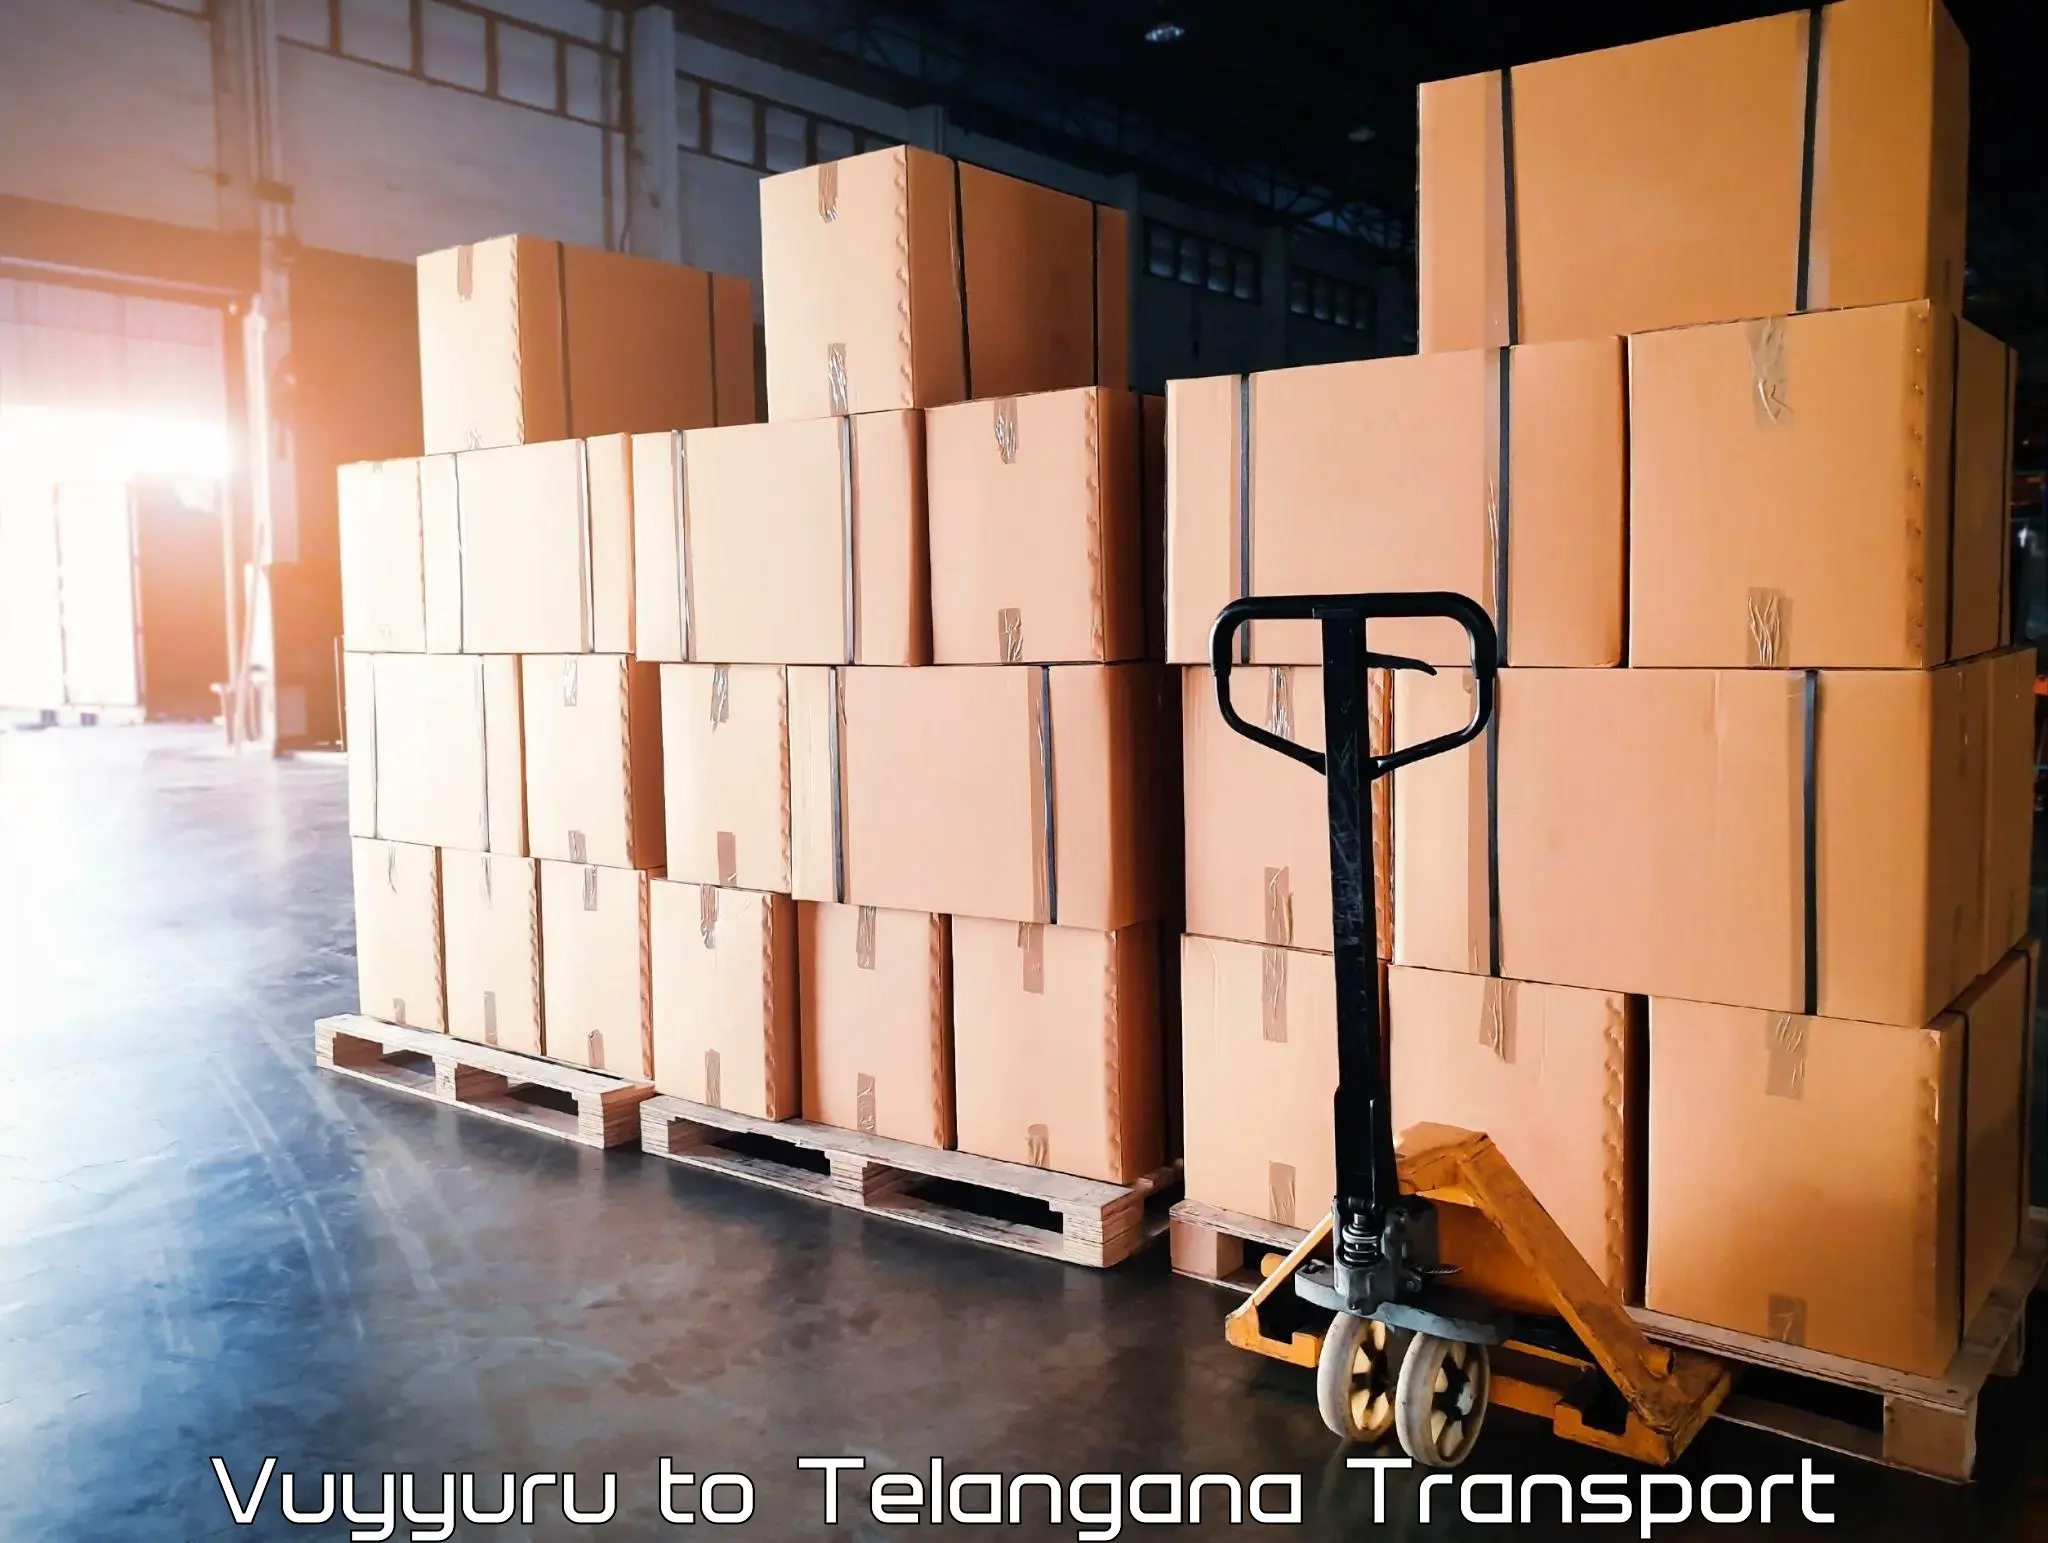 Two wheeler parcel service in Vuyyuru to Kodad